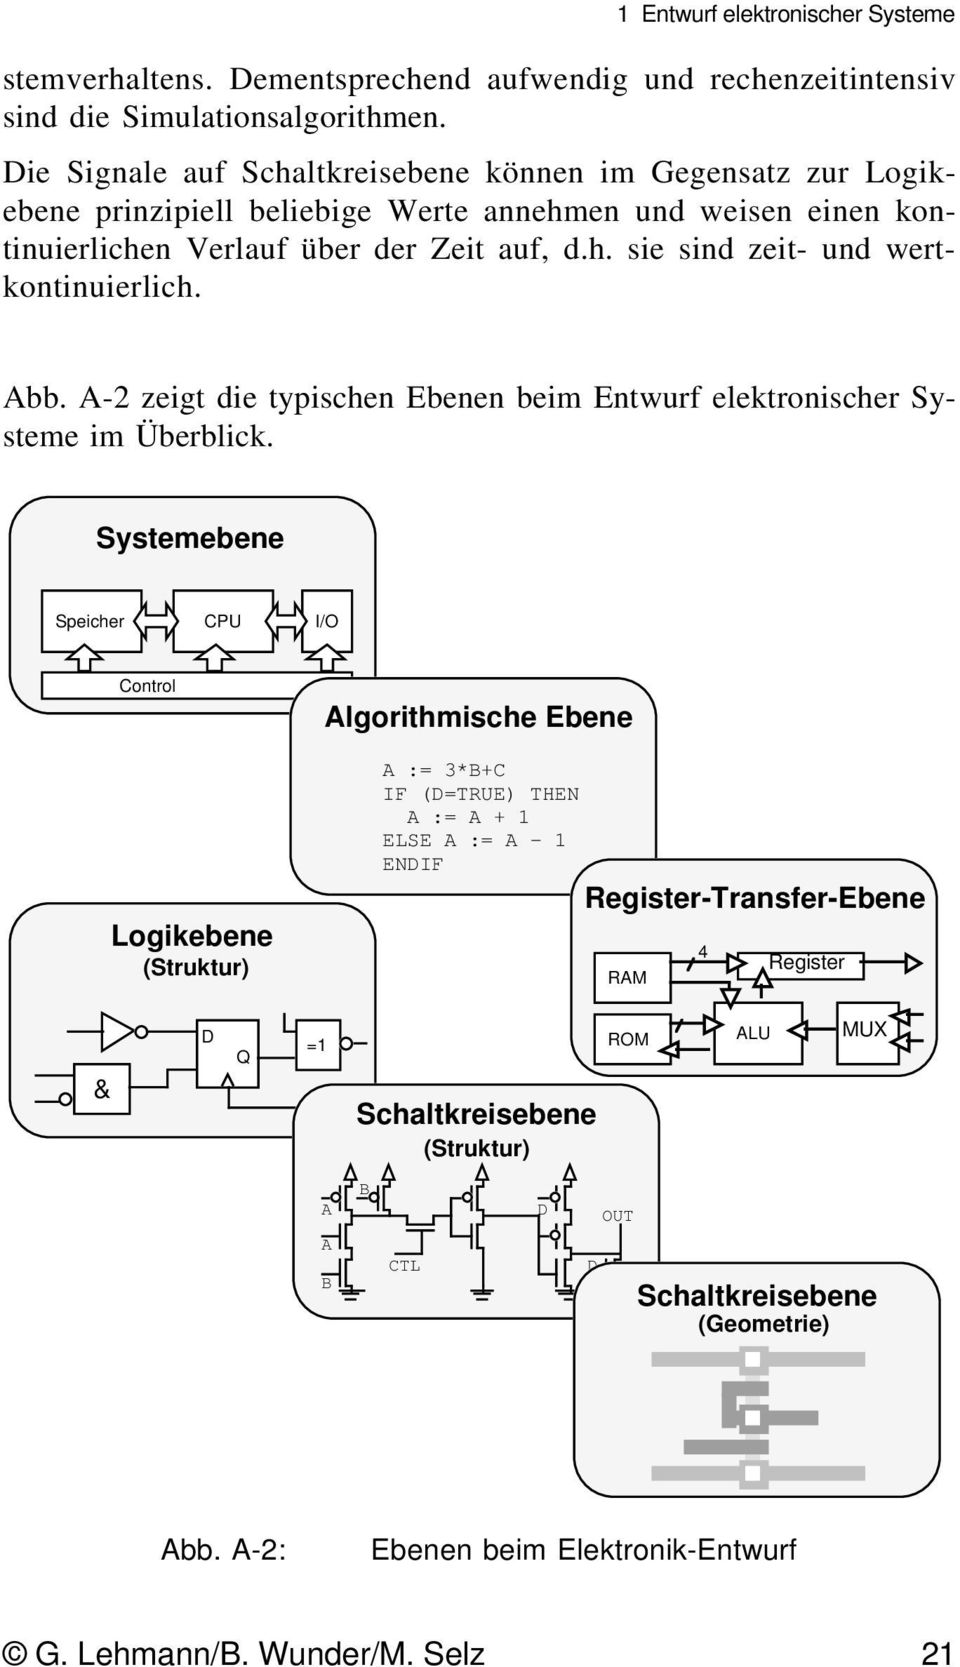 Abb. A-2 zeigt die typischen Ebenen beim Entwurf elektronischer Systeme im Überblick.